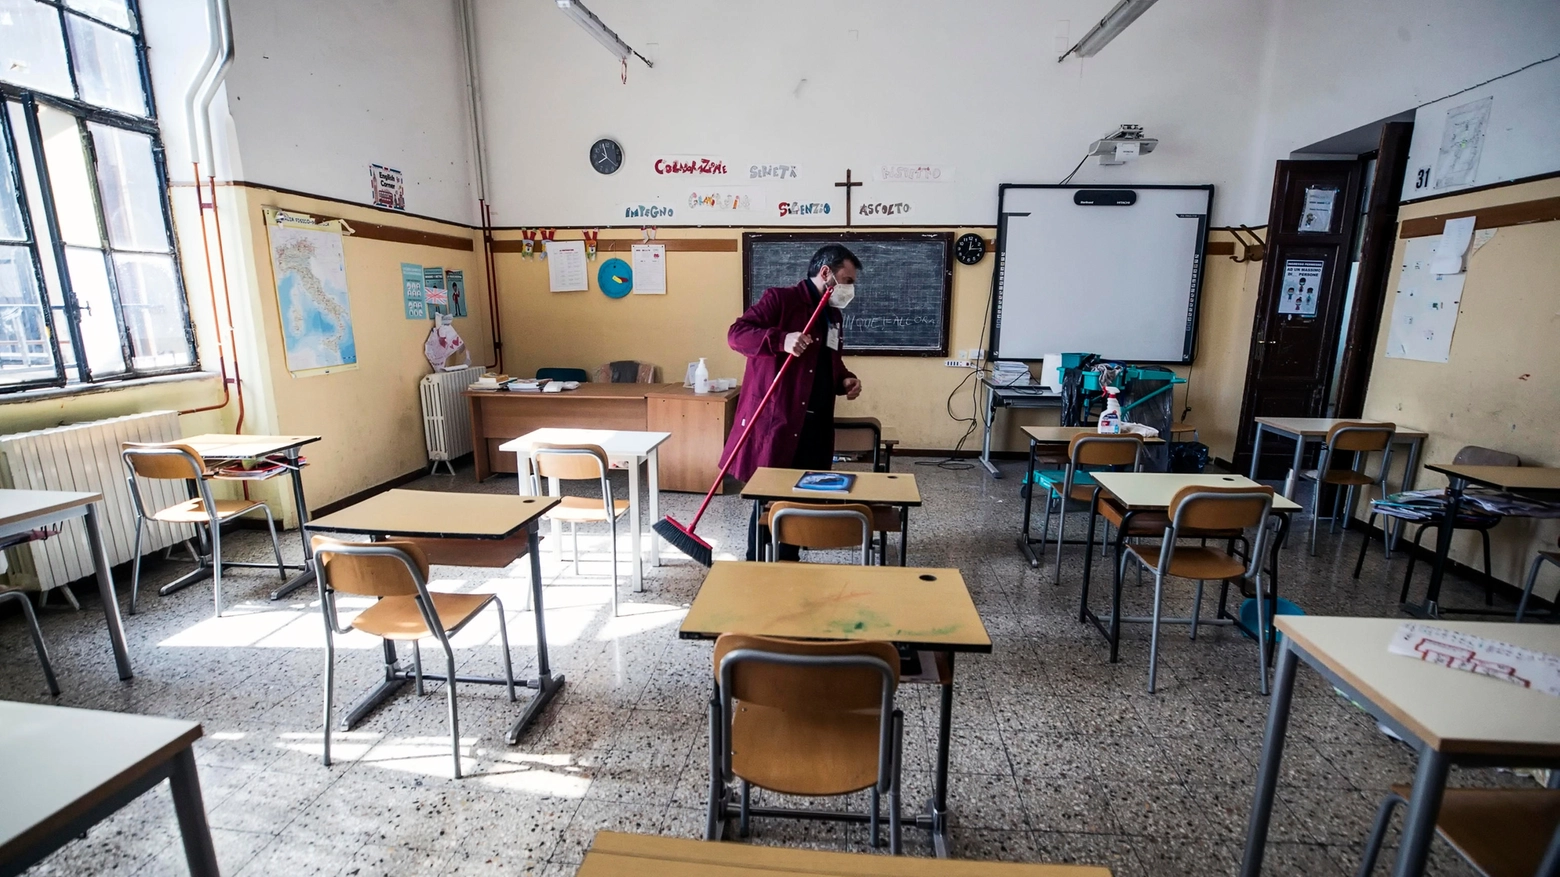 Napoli, Covid: scuole chiuse fino al 15 maggio a Sant’Anastasia